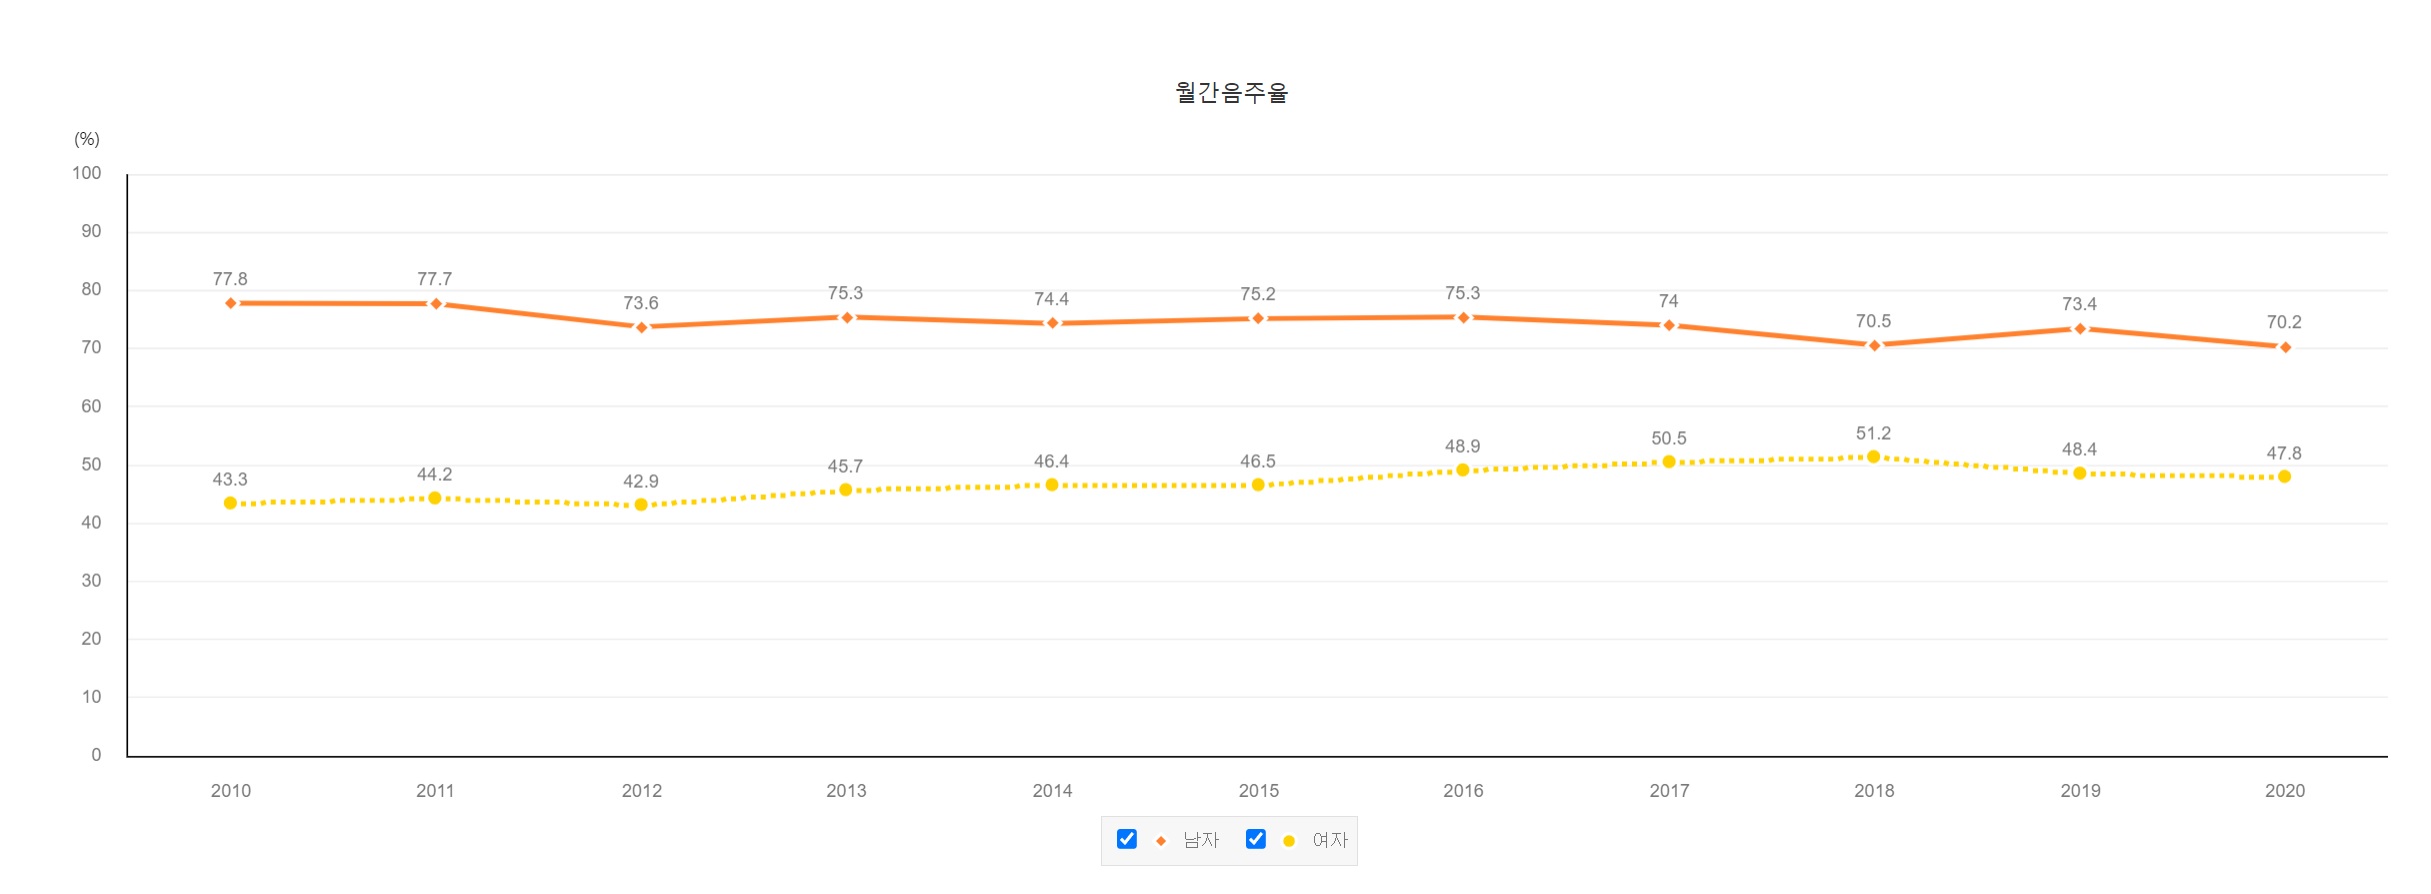 한국 음주율 차트